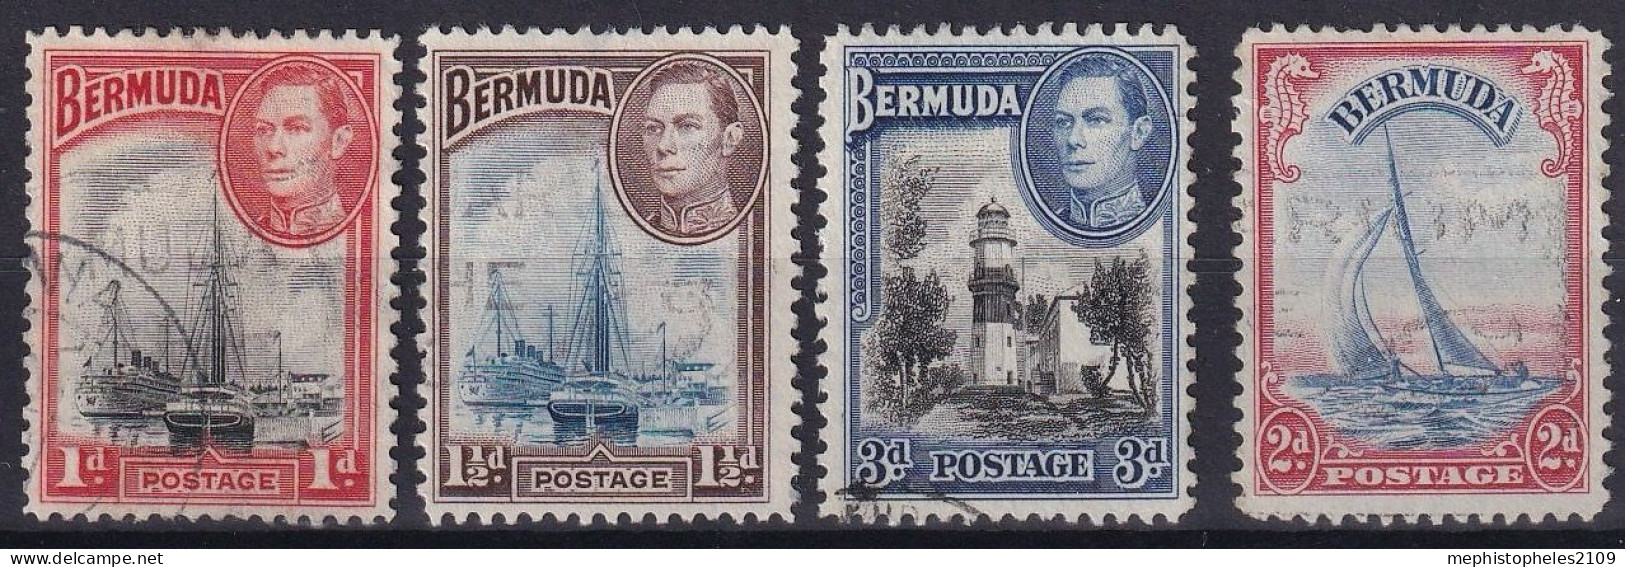 BERMUDA 1938 - Canceled - Sc# 118, 119, 121A - Bermuda